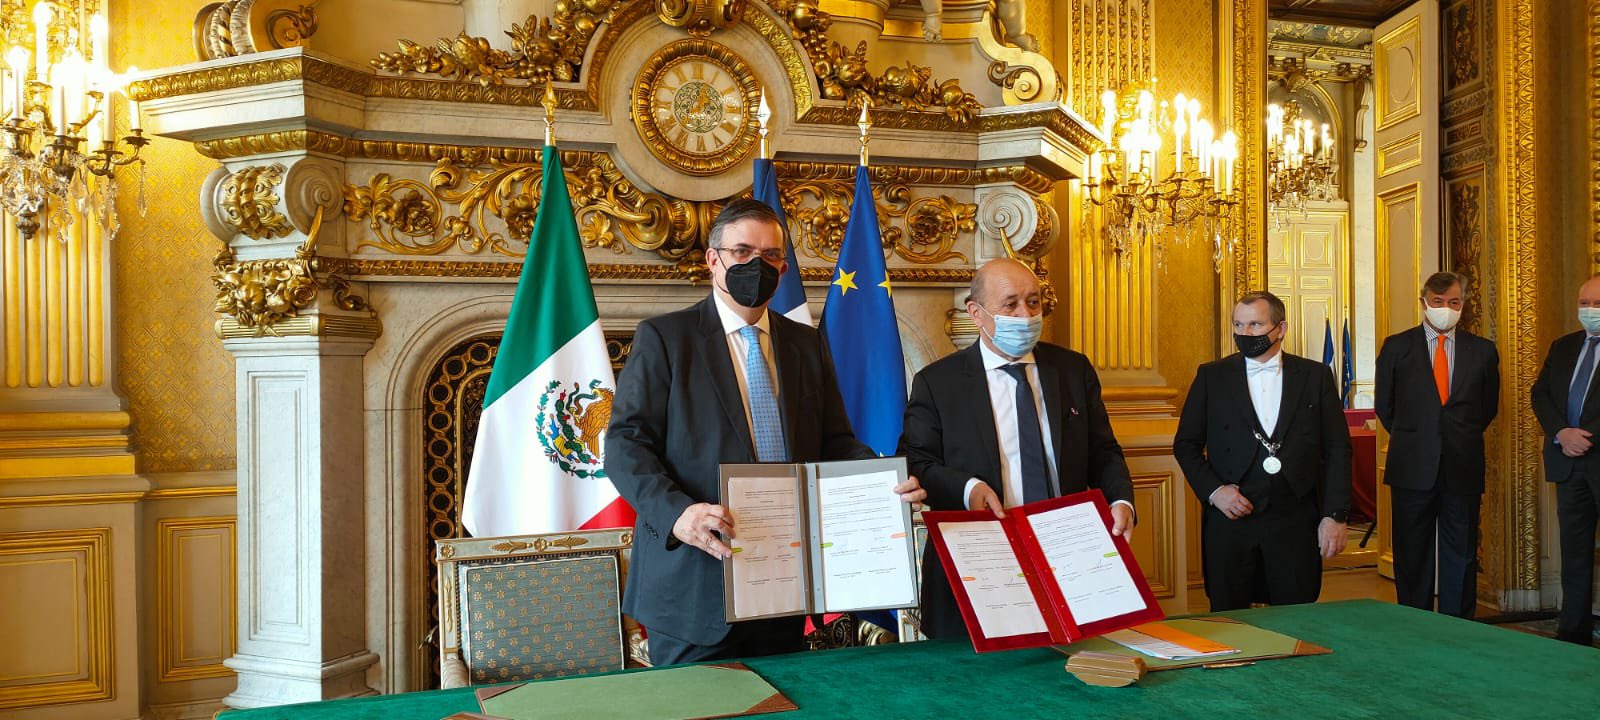 Firman México y Francia acuerdo para combatir tráfico ilícito de bienes culturales